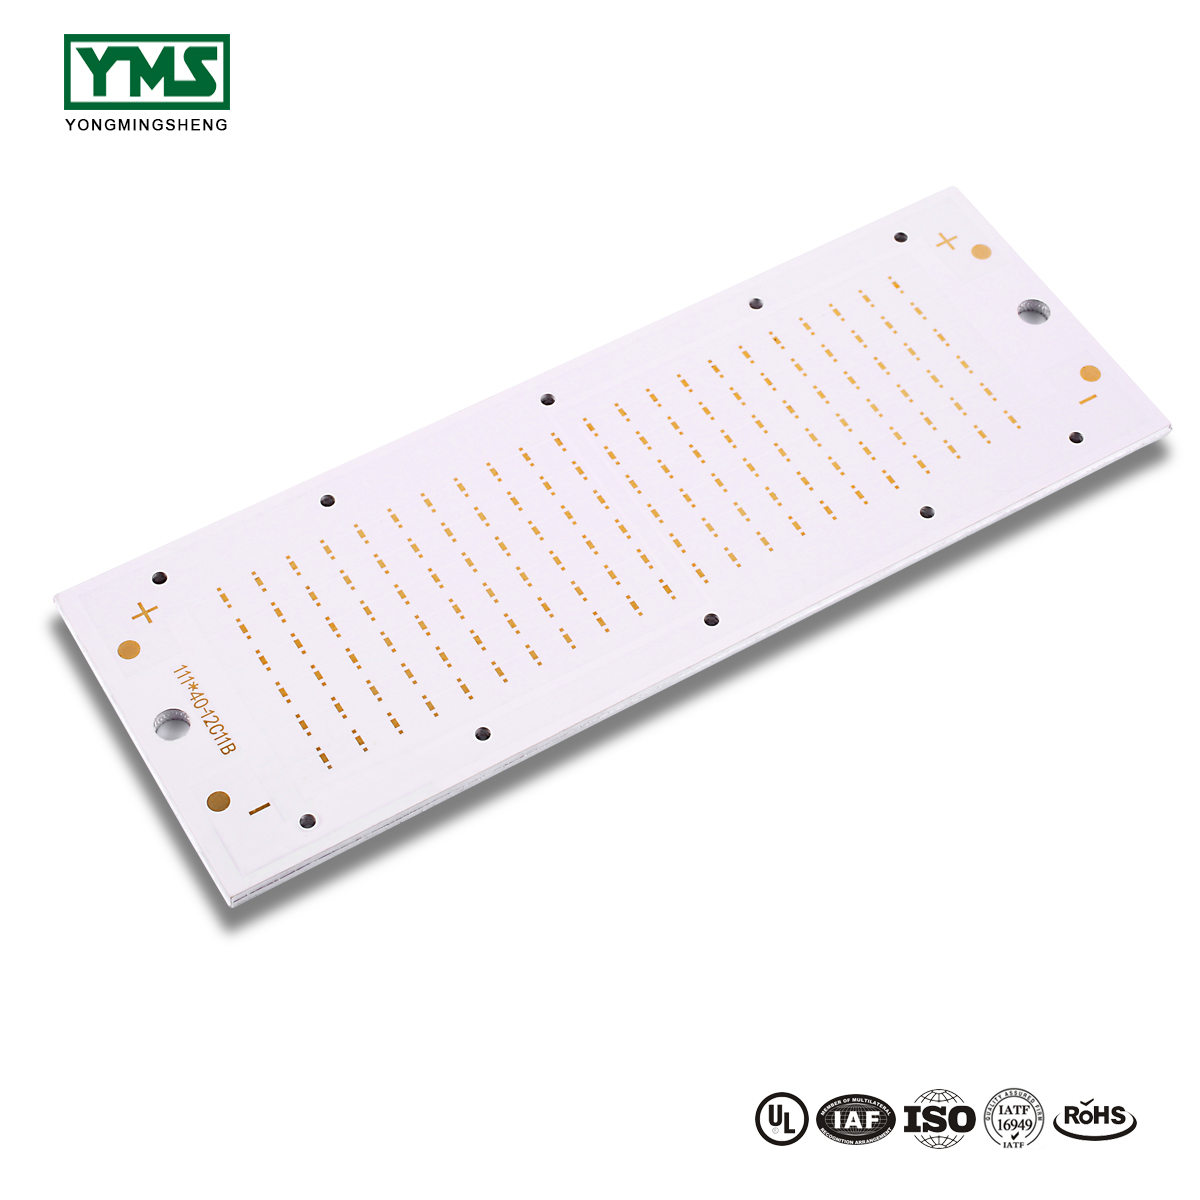 100% Original 5050c Ceramic Board - 1Layer Aluminum base Board | YMSPCB – Yongmingsheng